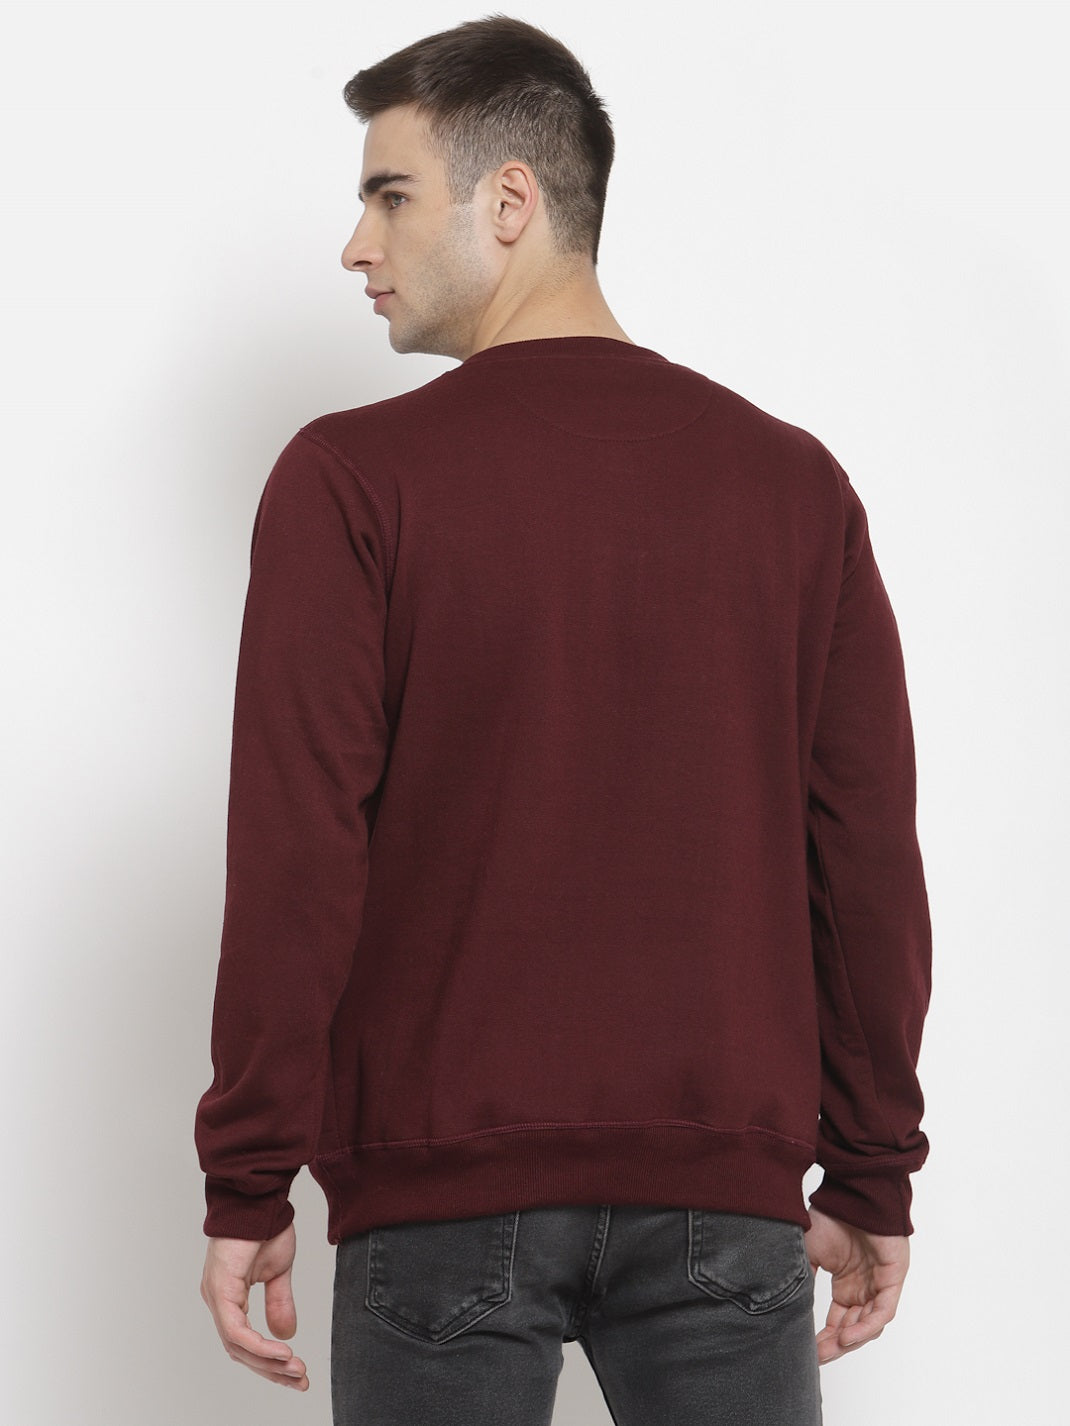 Men's Cotton Sweatshirt